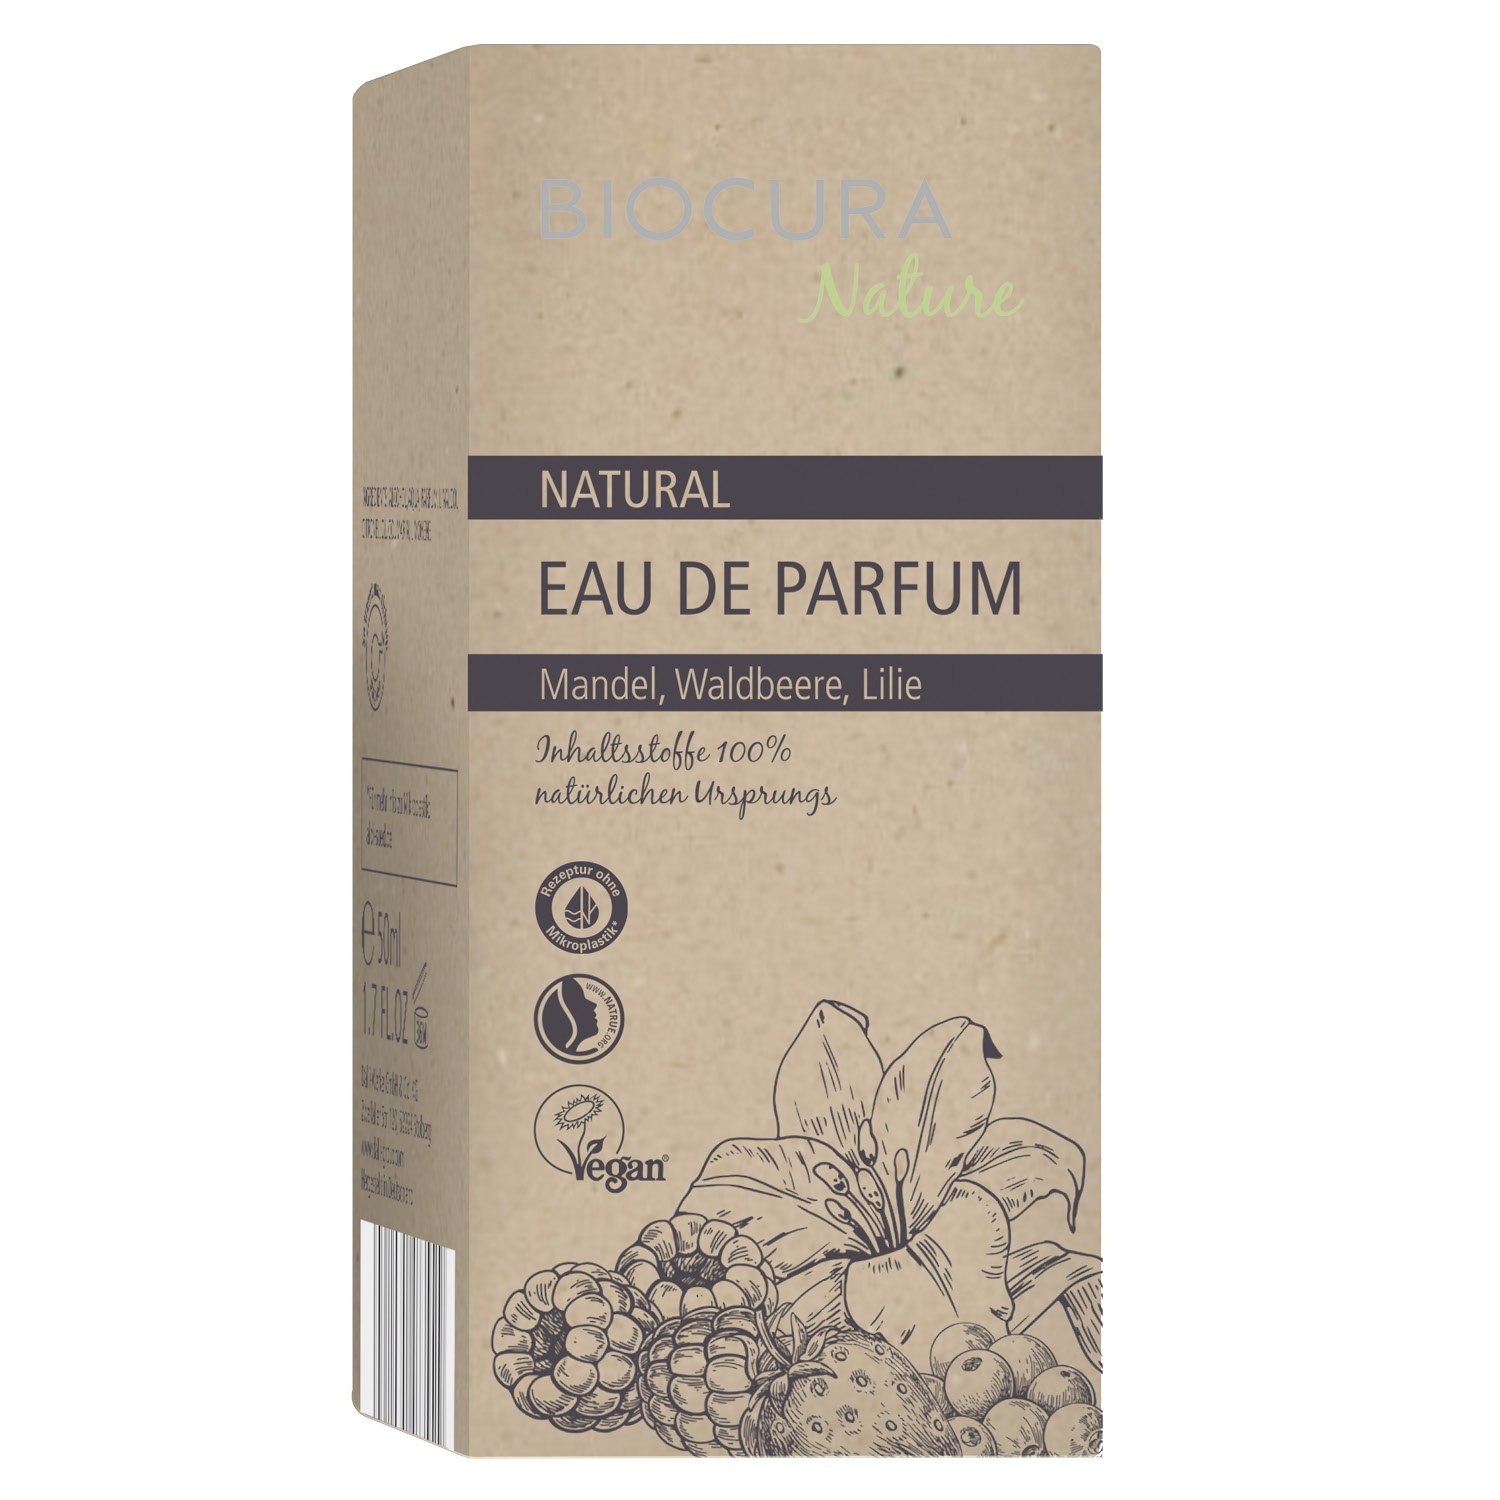 BIOCURA NATURE Eau de Parfum 50 ml